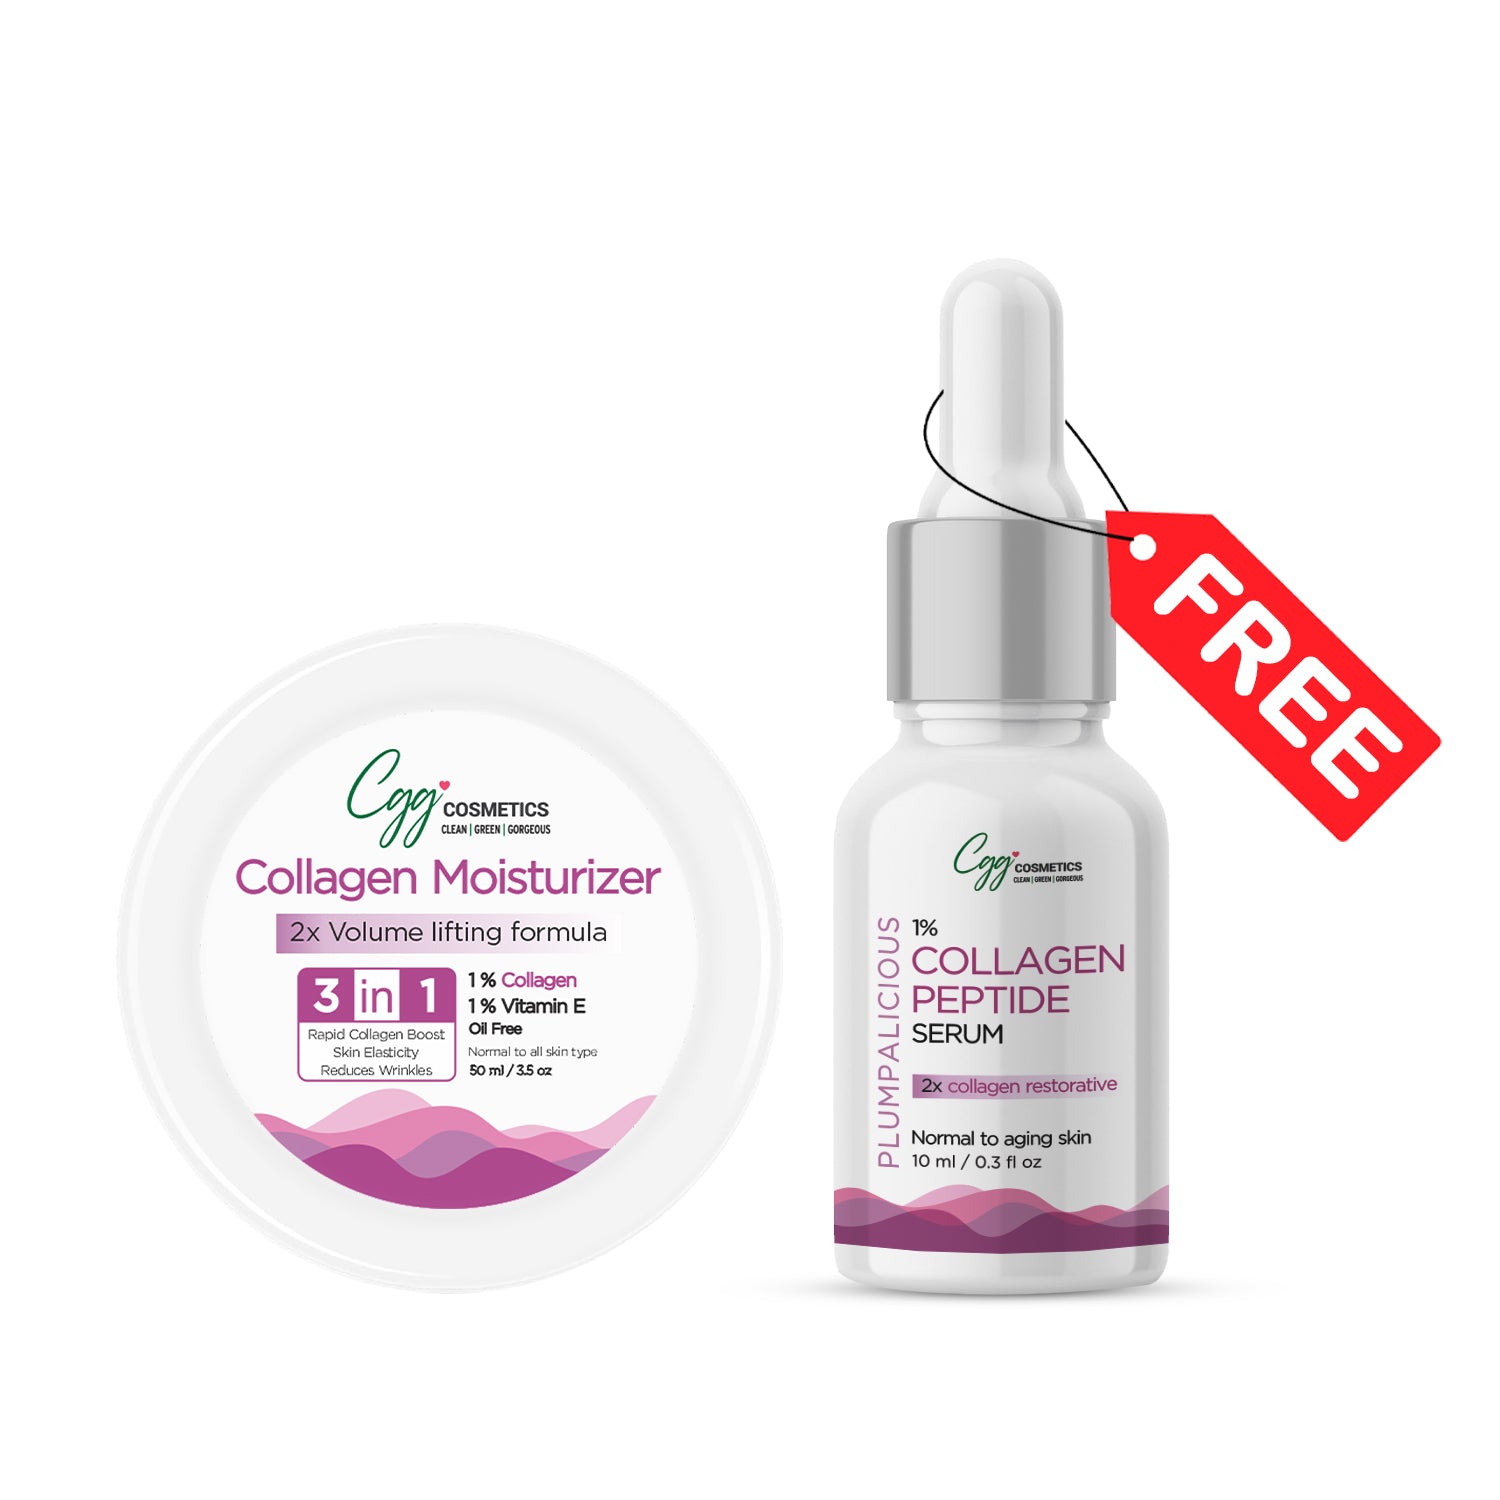 CGG Cosmetics Collagen Moisturizer 50ml + FREE 10ml Sample of 1% Collagen Serum